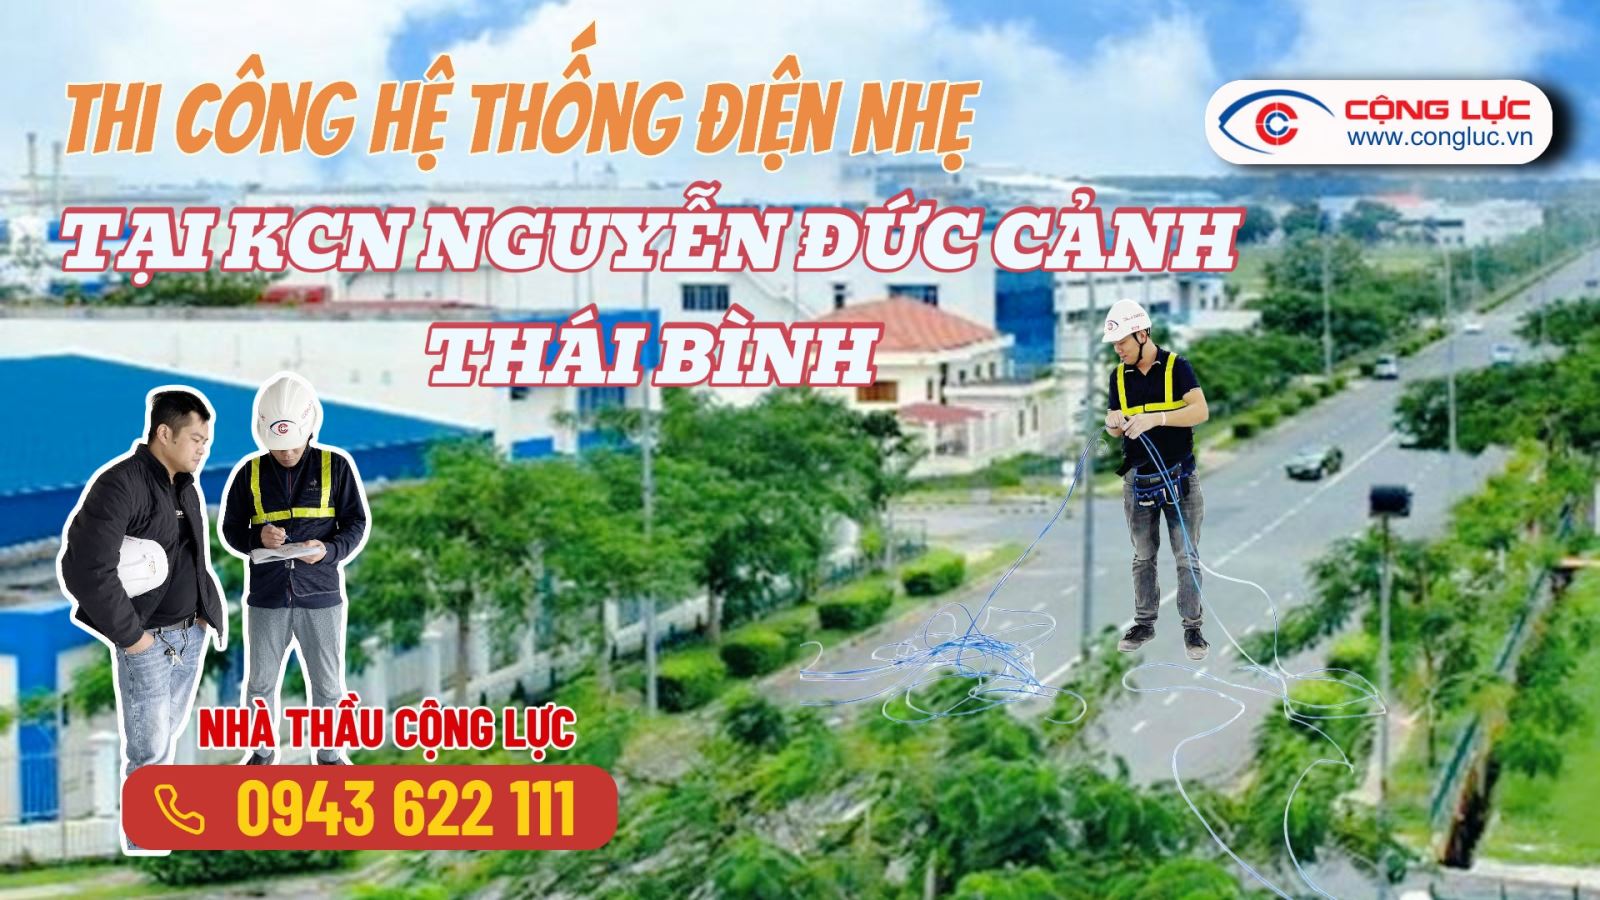 Cộng Lực đơn vị nhà thầu thi công hệ thống điện nhẹ tại kcn Nguyễn Đức Cảnh Thái Bình